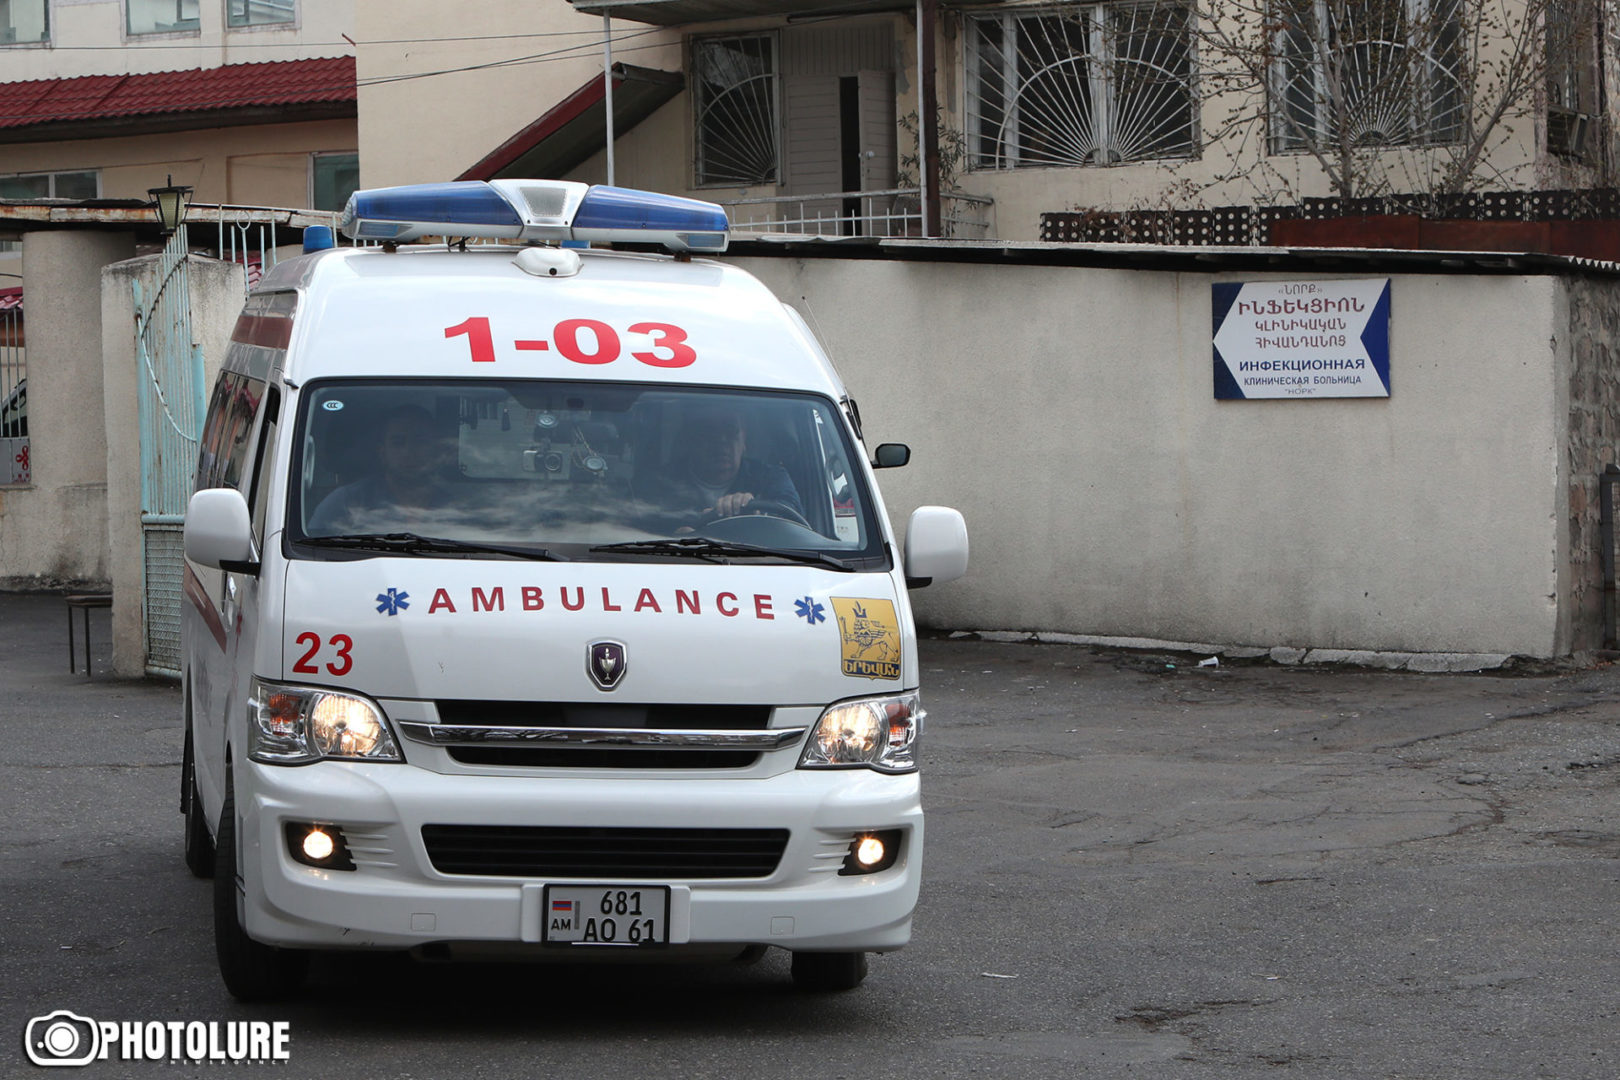 Ադրբեջանը թիրախավորել է քաղաքացիական ենթակառուցվածքներ, շտապօգնության մեքենա․ ՄԻՊ